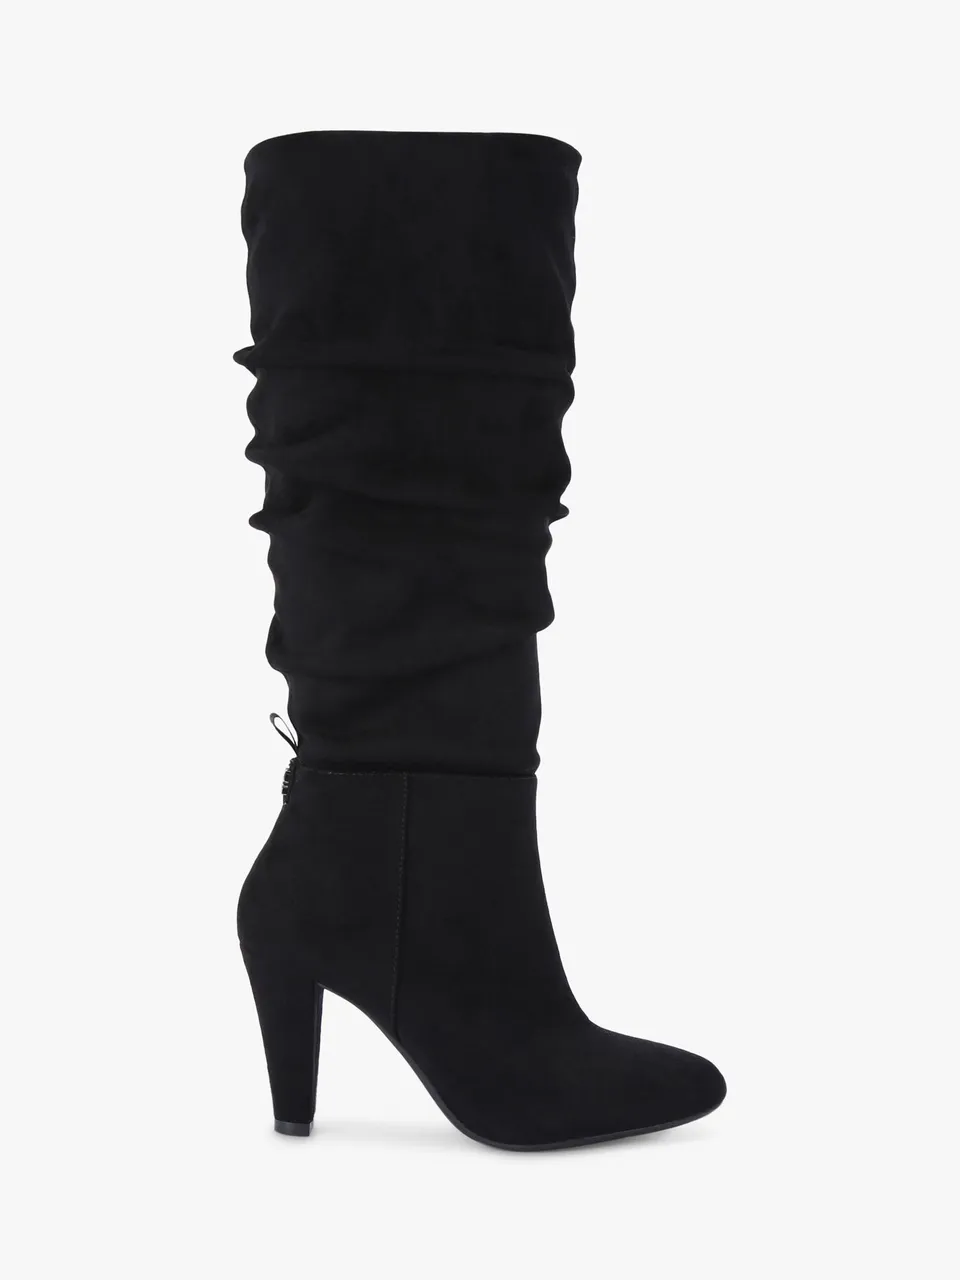 KG Kurt Geiger Slinky Microsuede Knee High Boots - Black - Female